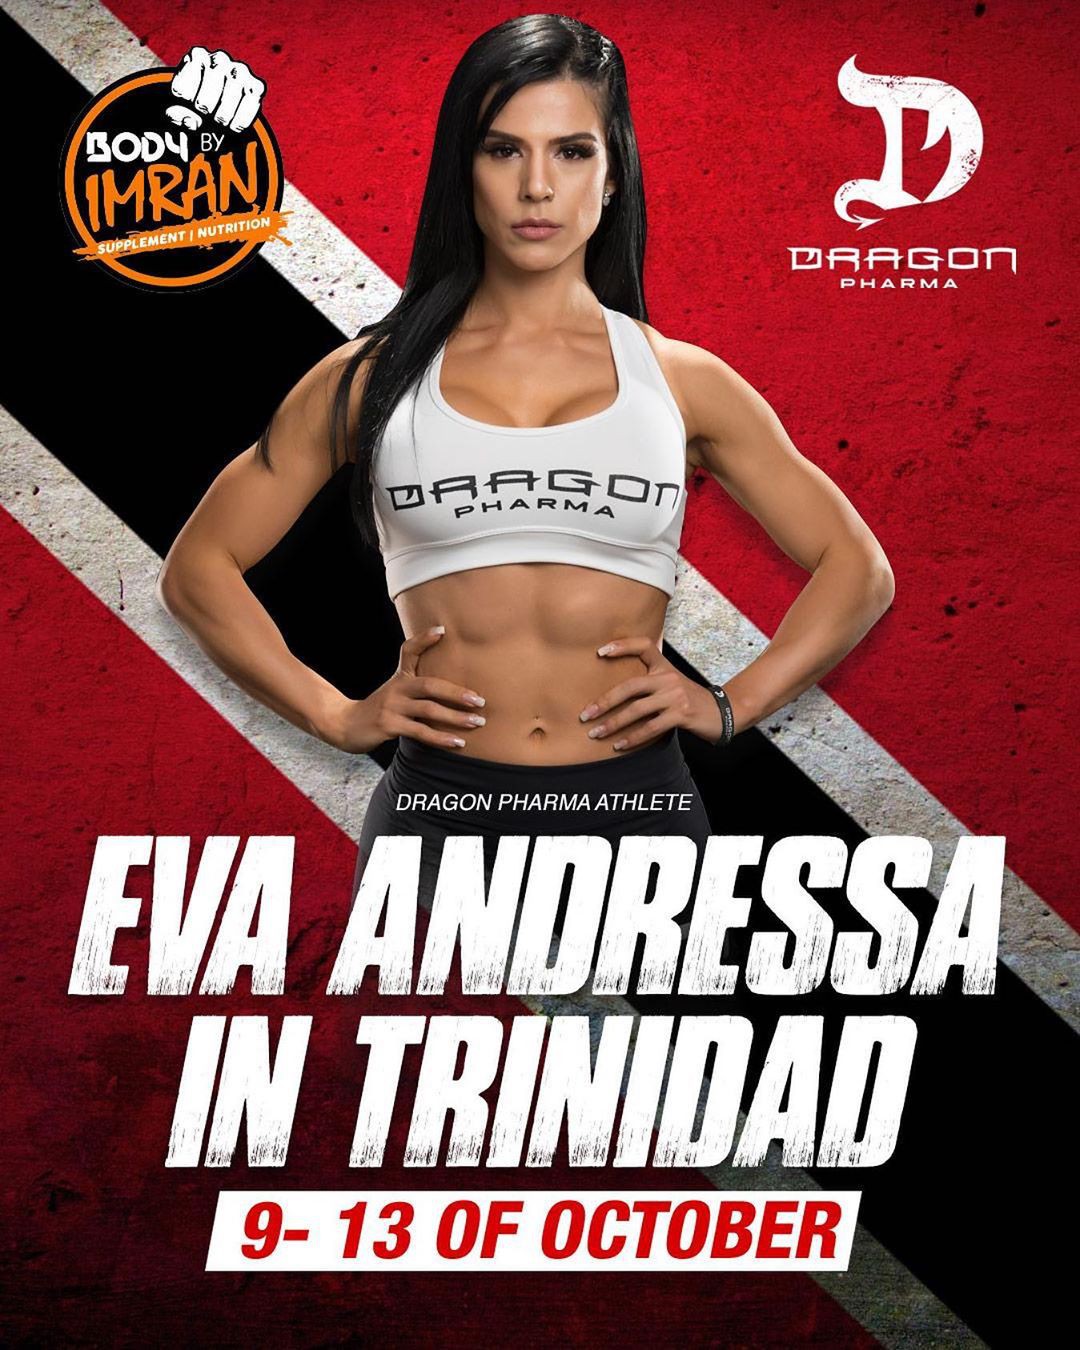 Eva Andressa Abs, Eva Andressa, Physical fitness: Weight loss,  Fitness Model,  Hot Instagram Models,  Eva Andressa  